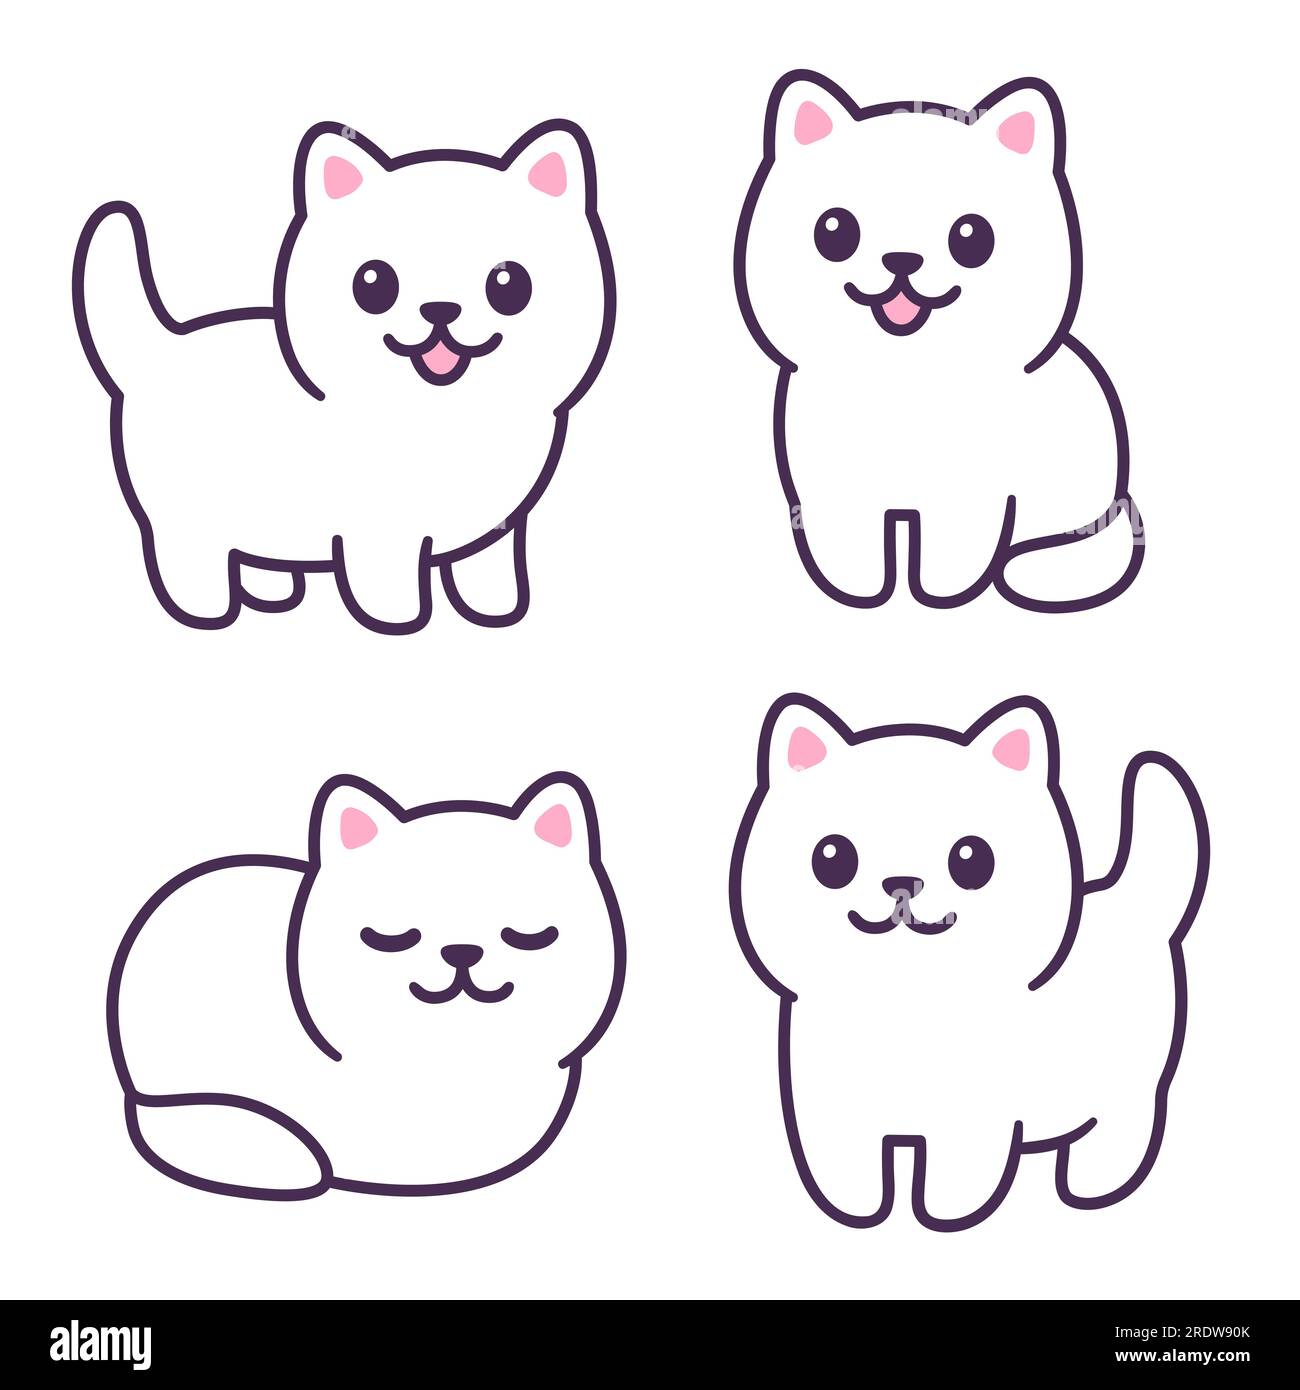 Winziges weißes Baby-Kätzchen-Zeichenset. Süße kleine fette Katze, die steht, sitzt und lügt. Einfache Kawaii-Doodle-Style-Illustration. Stock Vektor